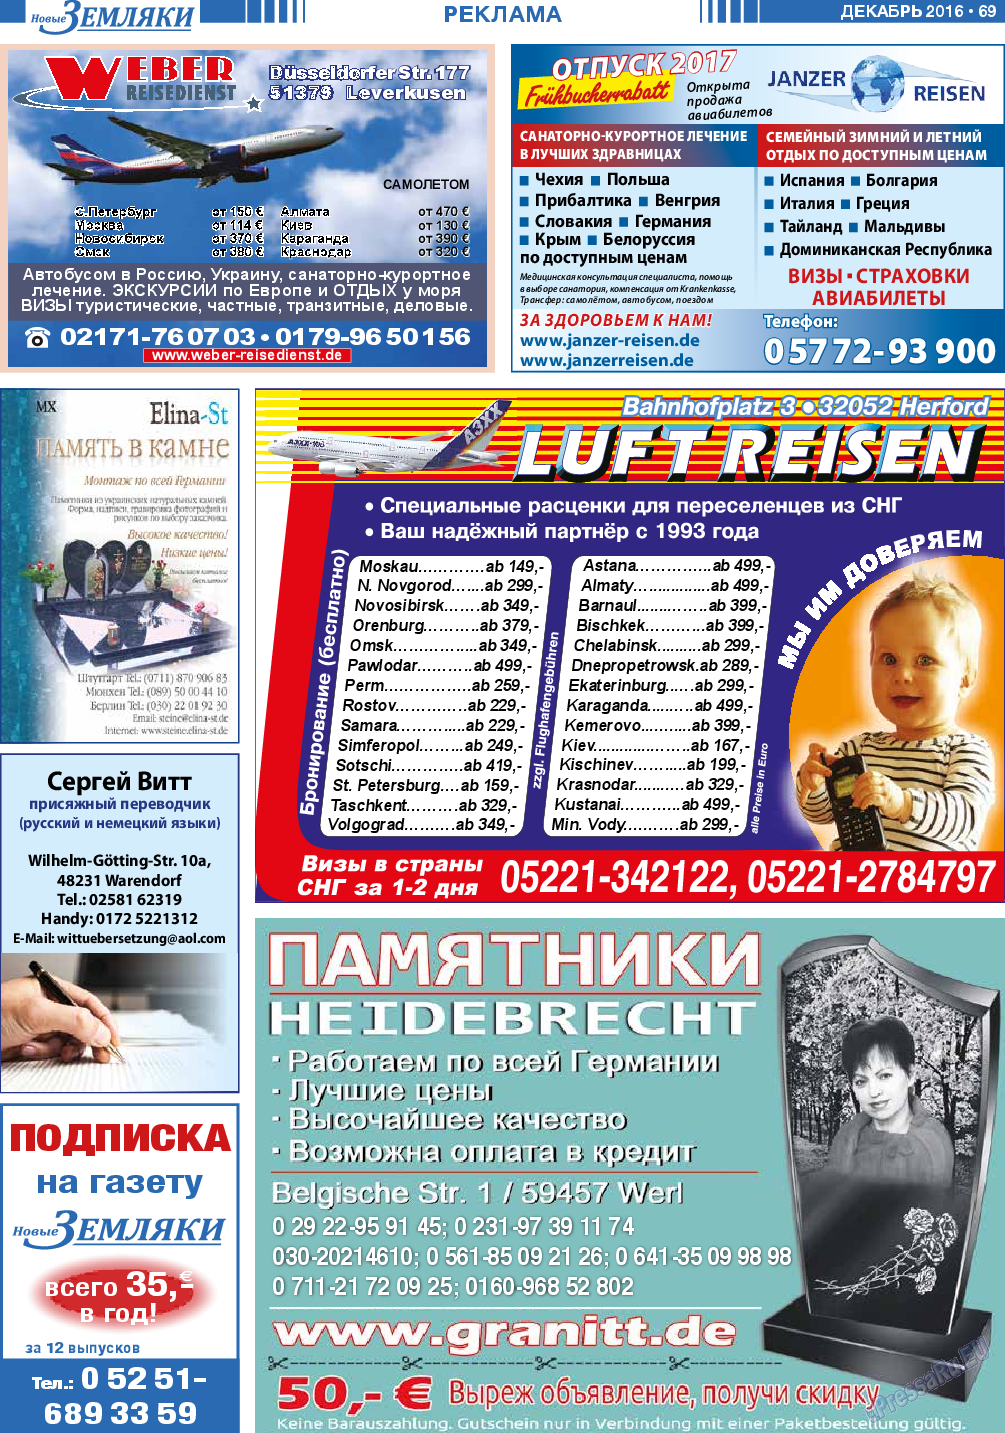 Новые Земляки (газета). 2016 год, номер 12, стр. 69